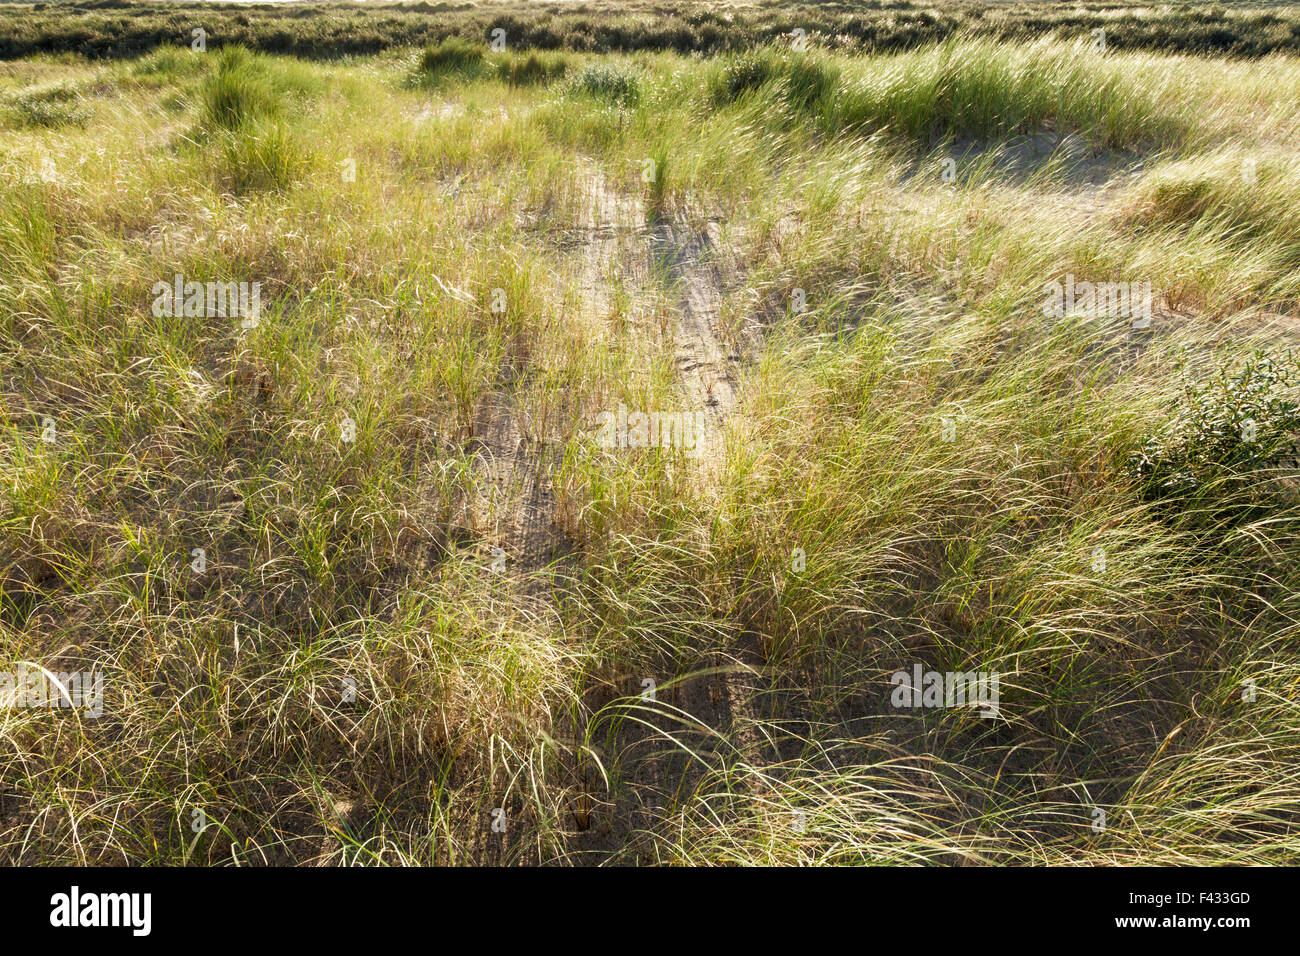 Geringer Sonneneinstrahlung durchschimmern Dünengebieten Grass, Ammophila Arenaria, wehen im Wind, Gibraltar Point, Lincolnshire, England, UK Stockfoto